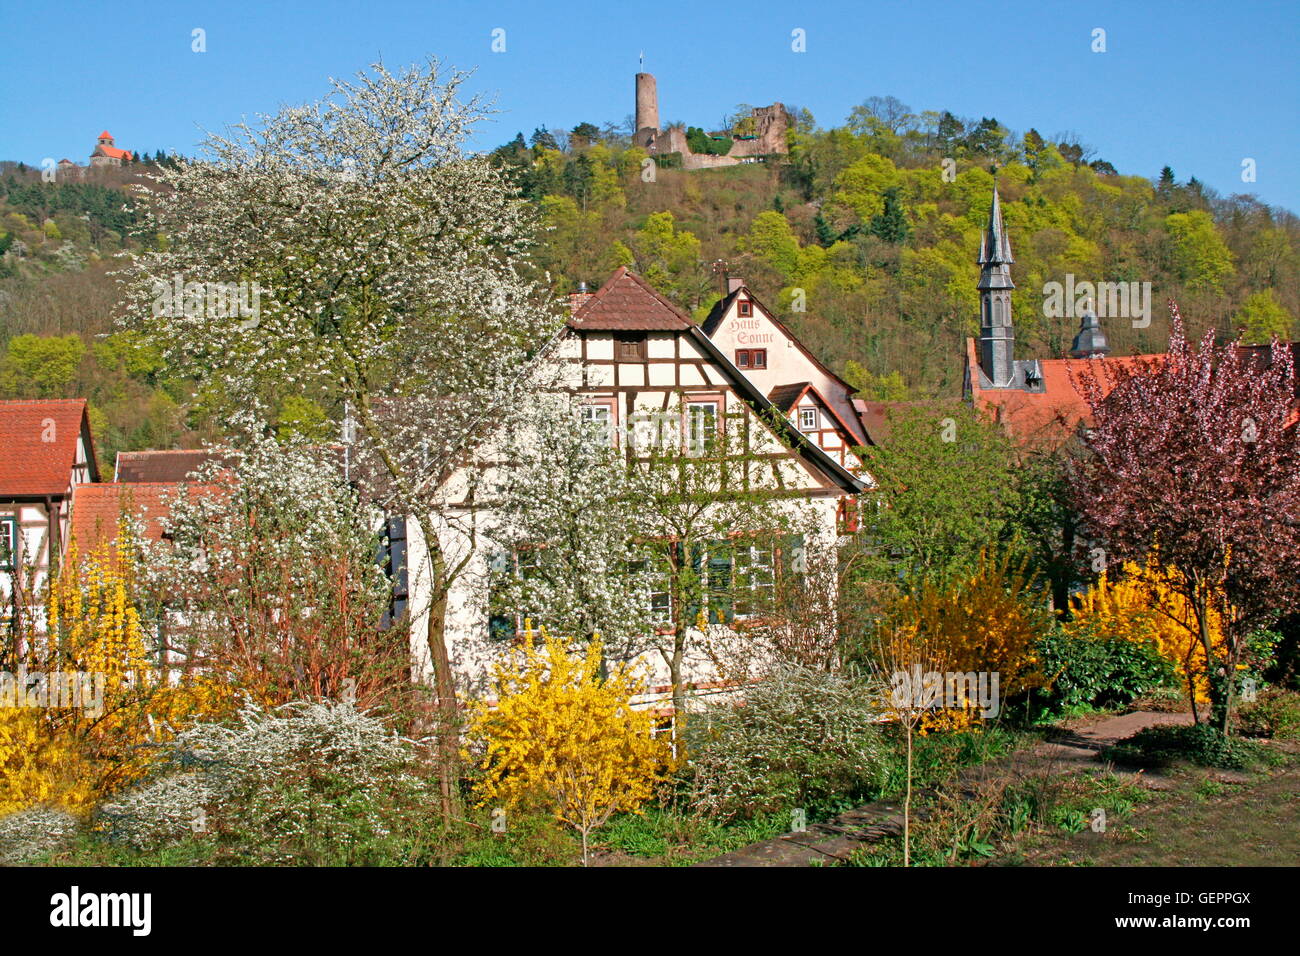 Geographie / Reisen, Deutschland, Baden-Württemberg, Weinheim, Bergstraße, Windeck Wasserburg (oben rechts), ca. 1130, Wachenburg (Schloss) (oben links), gebaut 1907-1913, Stockfoto